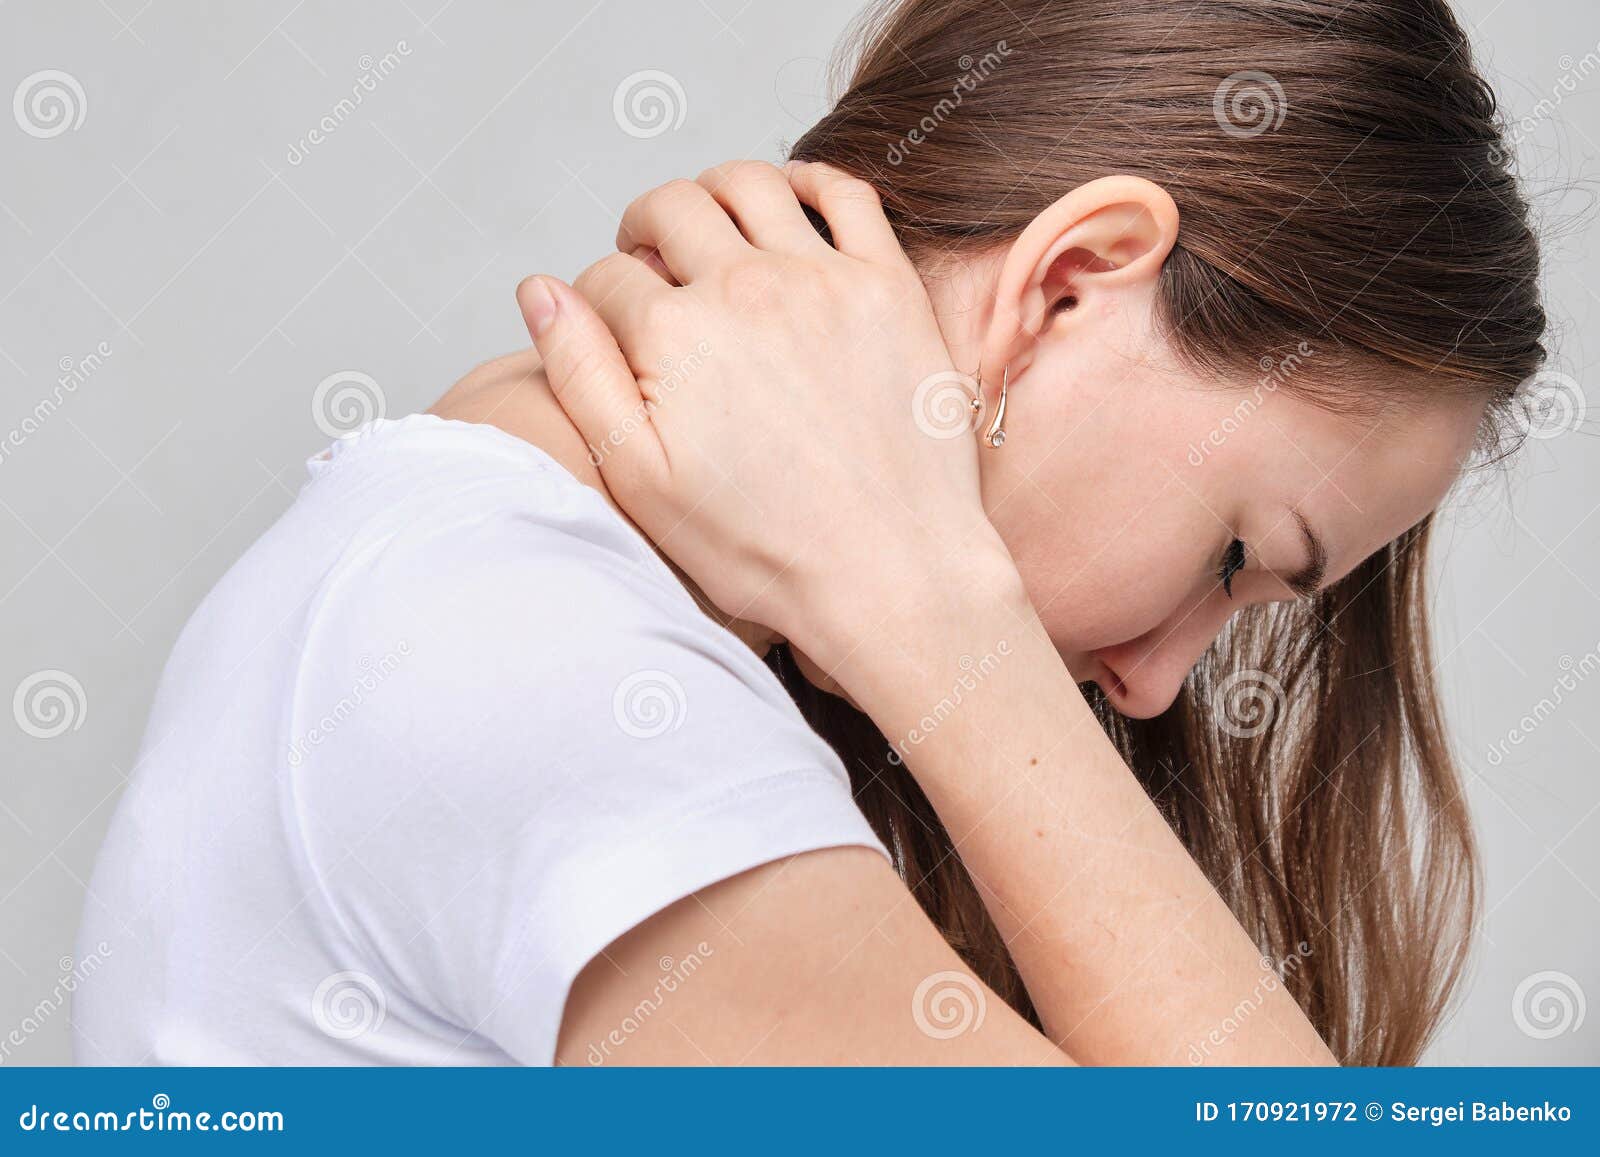 neck osteochondrosis massage)